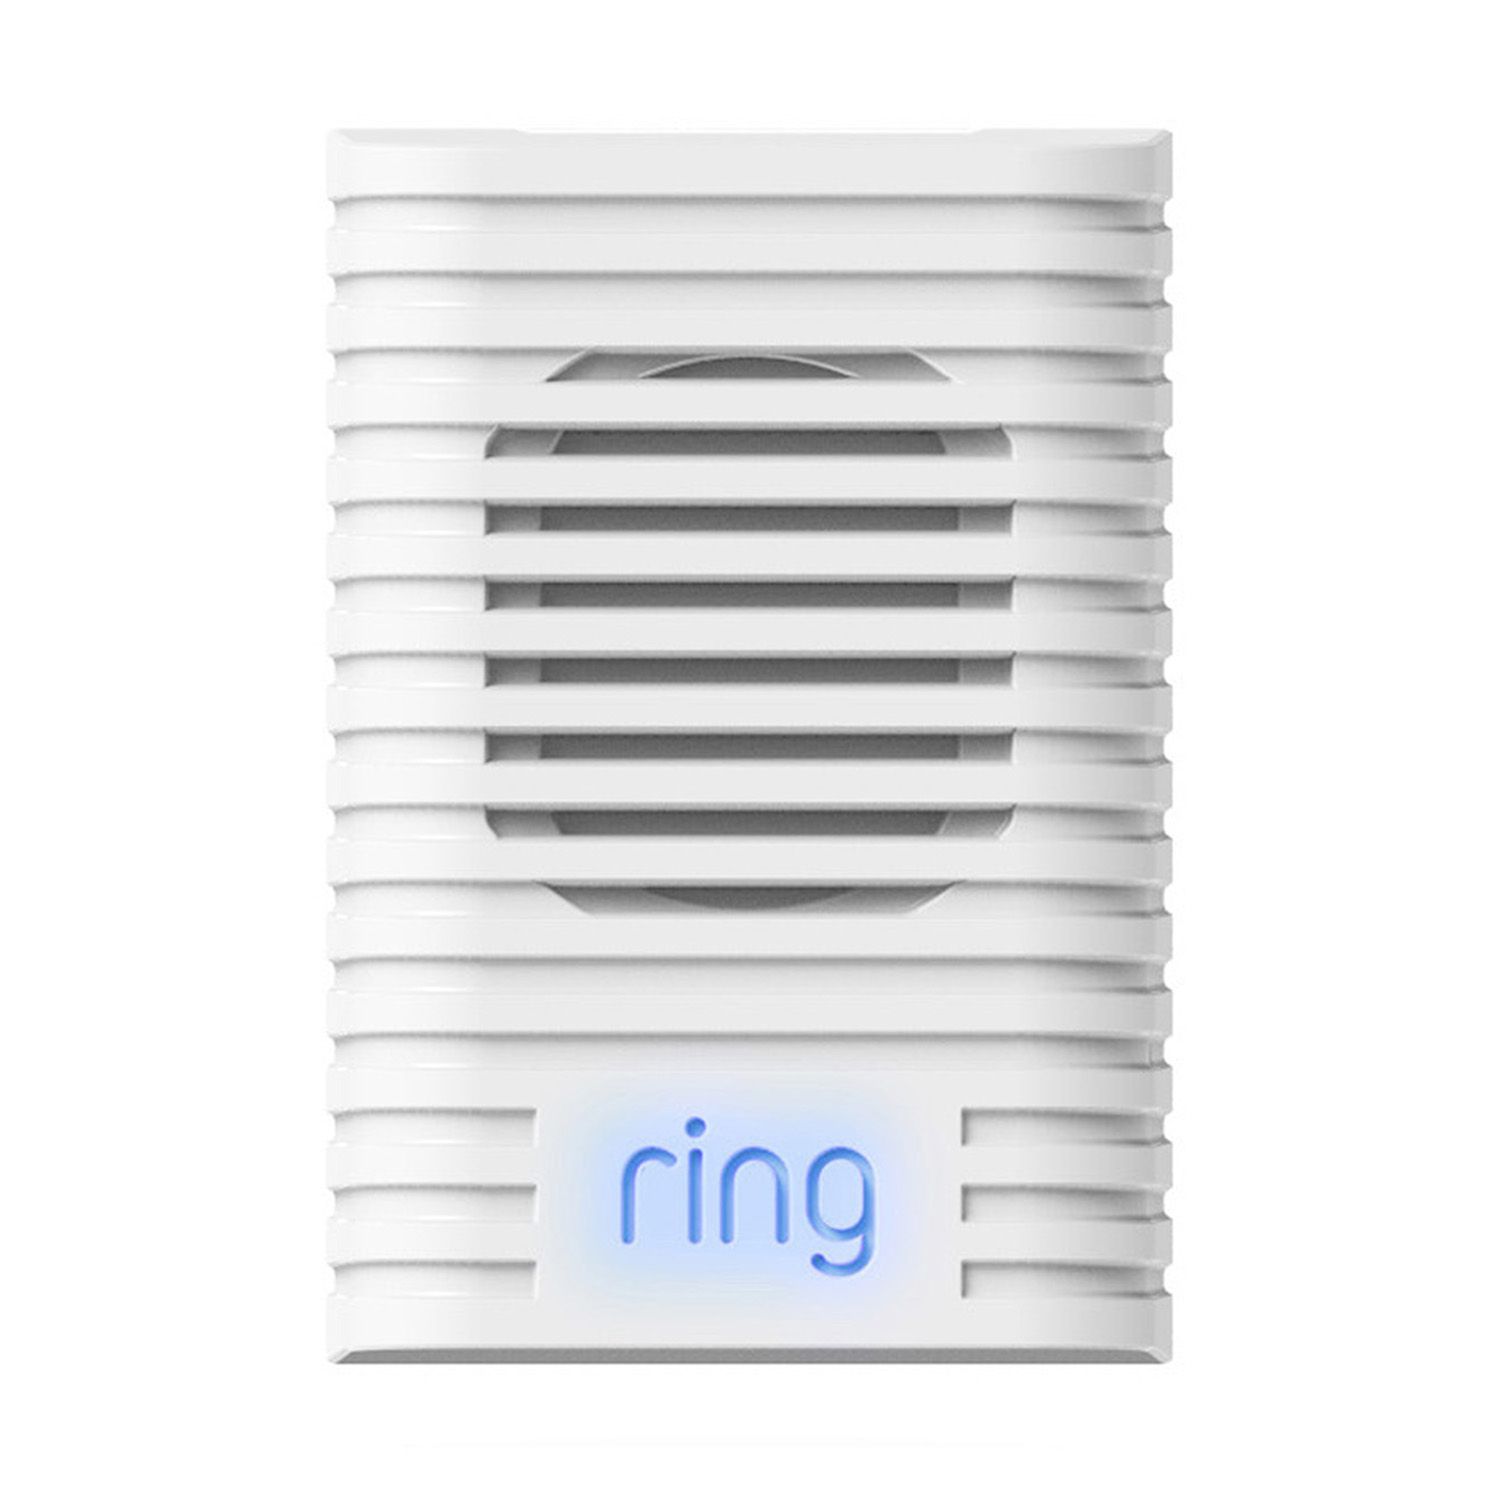 kohls ring doorbell 2